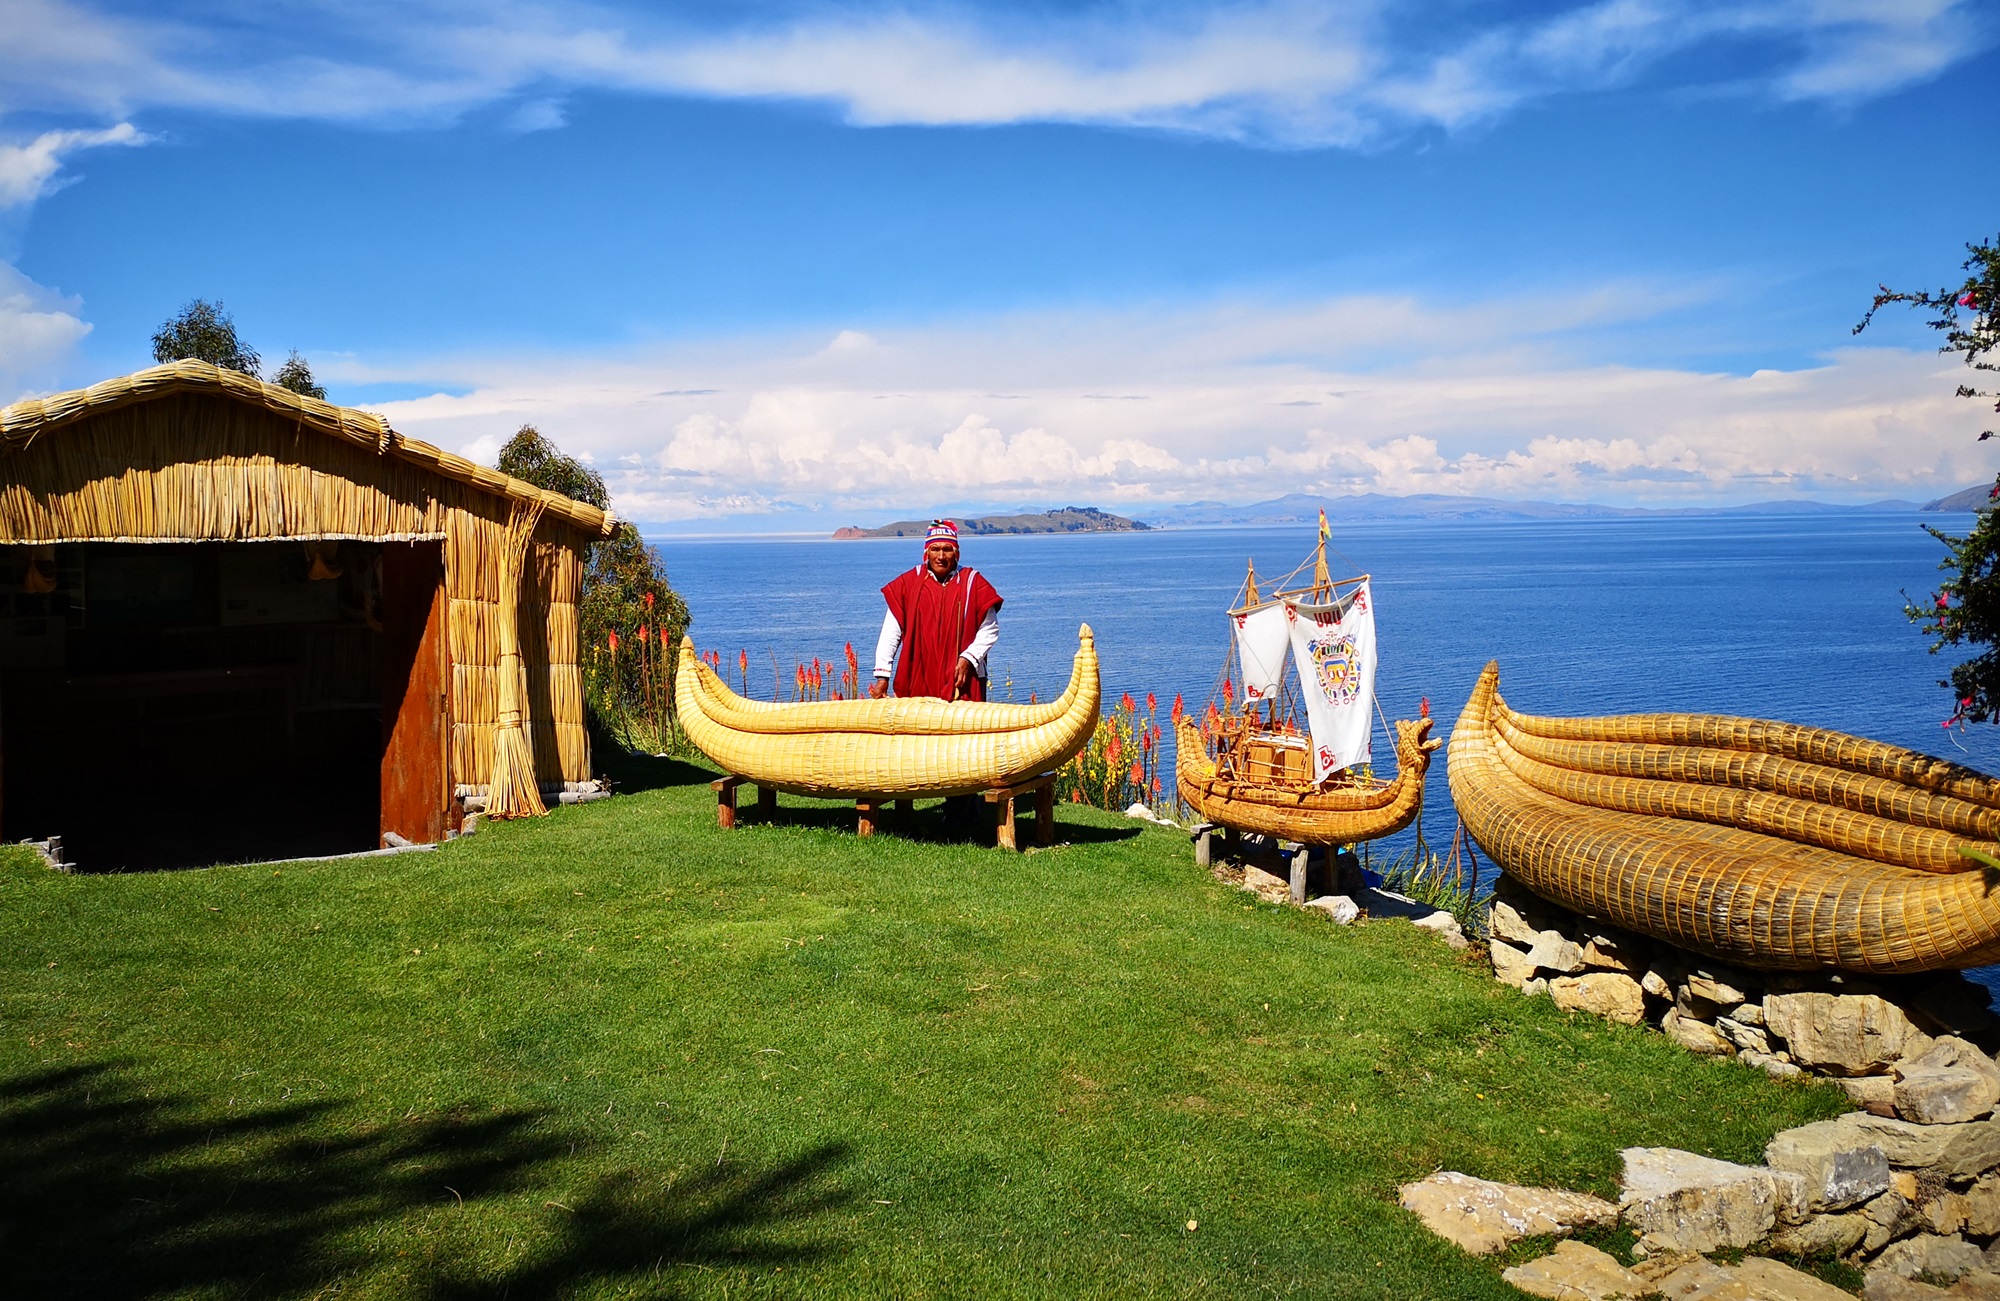 Voyage en Bolivie - Lac Titicaca - Amplitudes